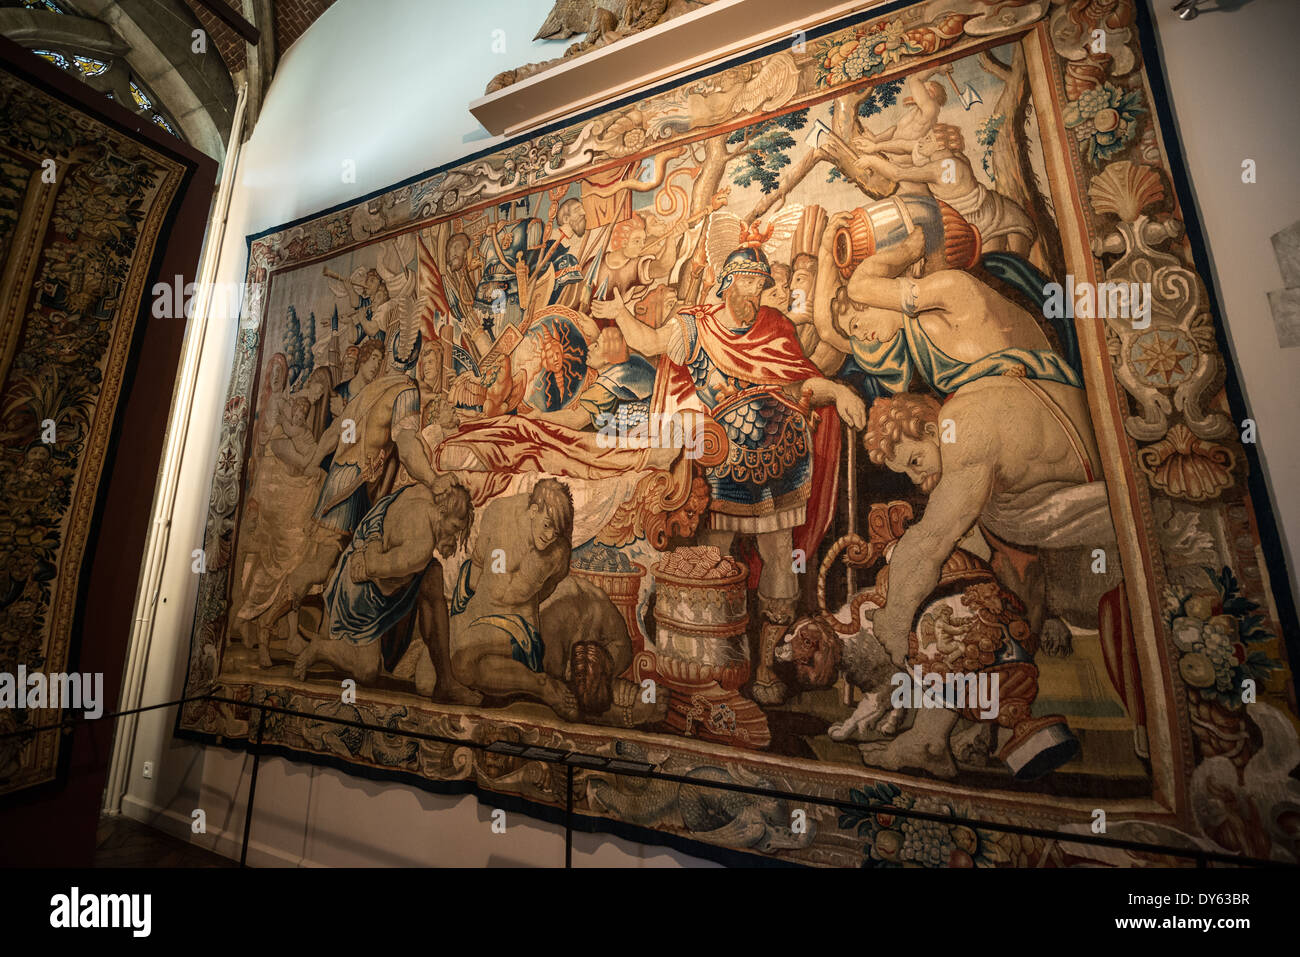 Une tapisserie baroque du 17ème siècle exposé au Musée de la ville de Bruxelles. Le musée est consacré à l'histoire et le folklore de la ville de Bruxelles, son développement à partir de ses débuts à aujourd'hui, qu'il présente à travers peintures, sculptures, tapisseries, gravures, photos et modèles. Banque D'Images